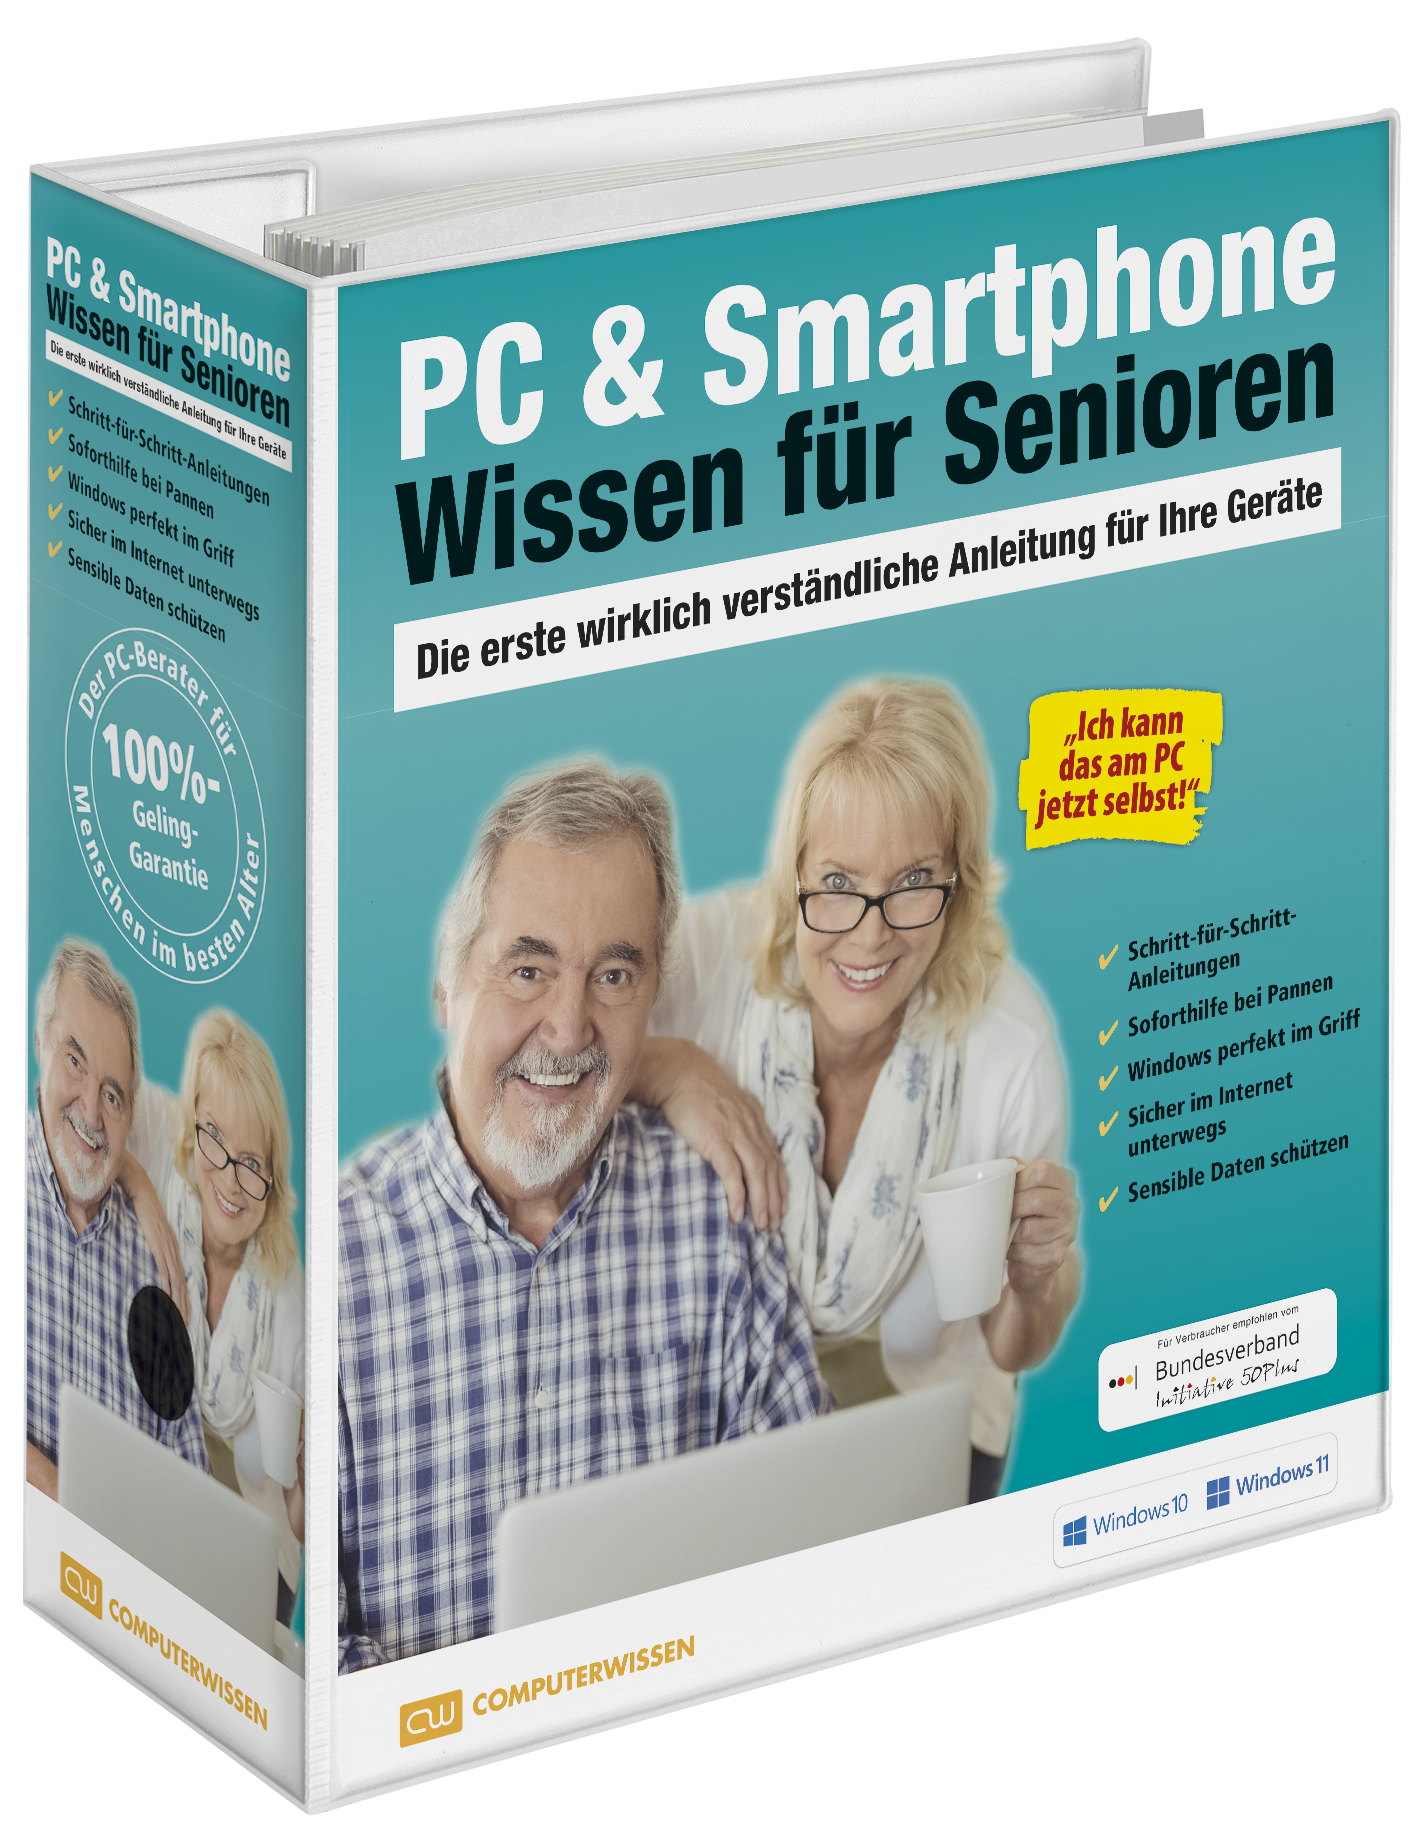 PC & Smartphone-Wissen für Senioren